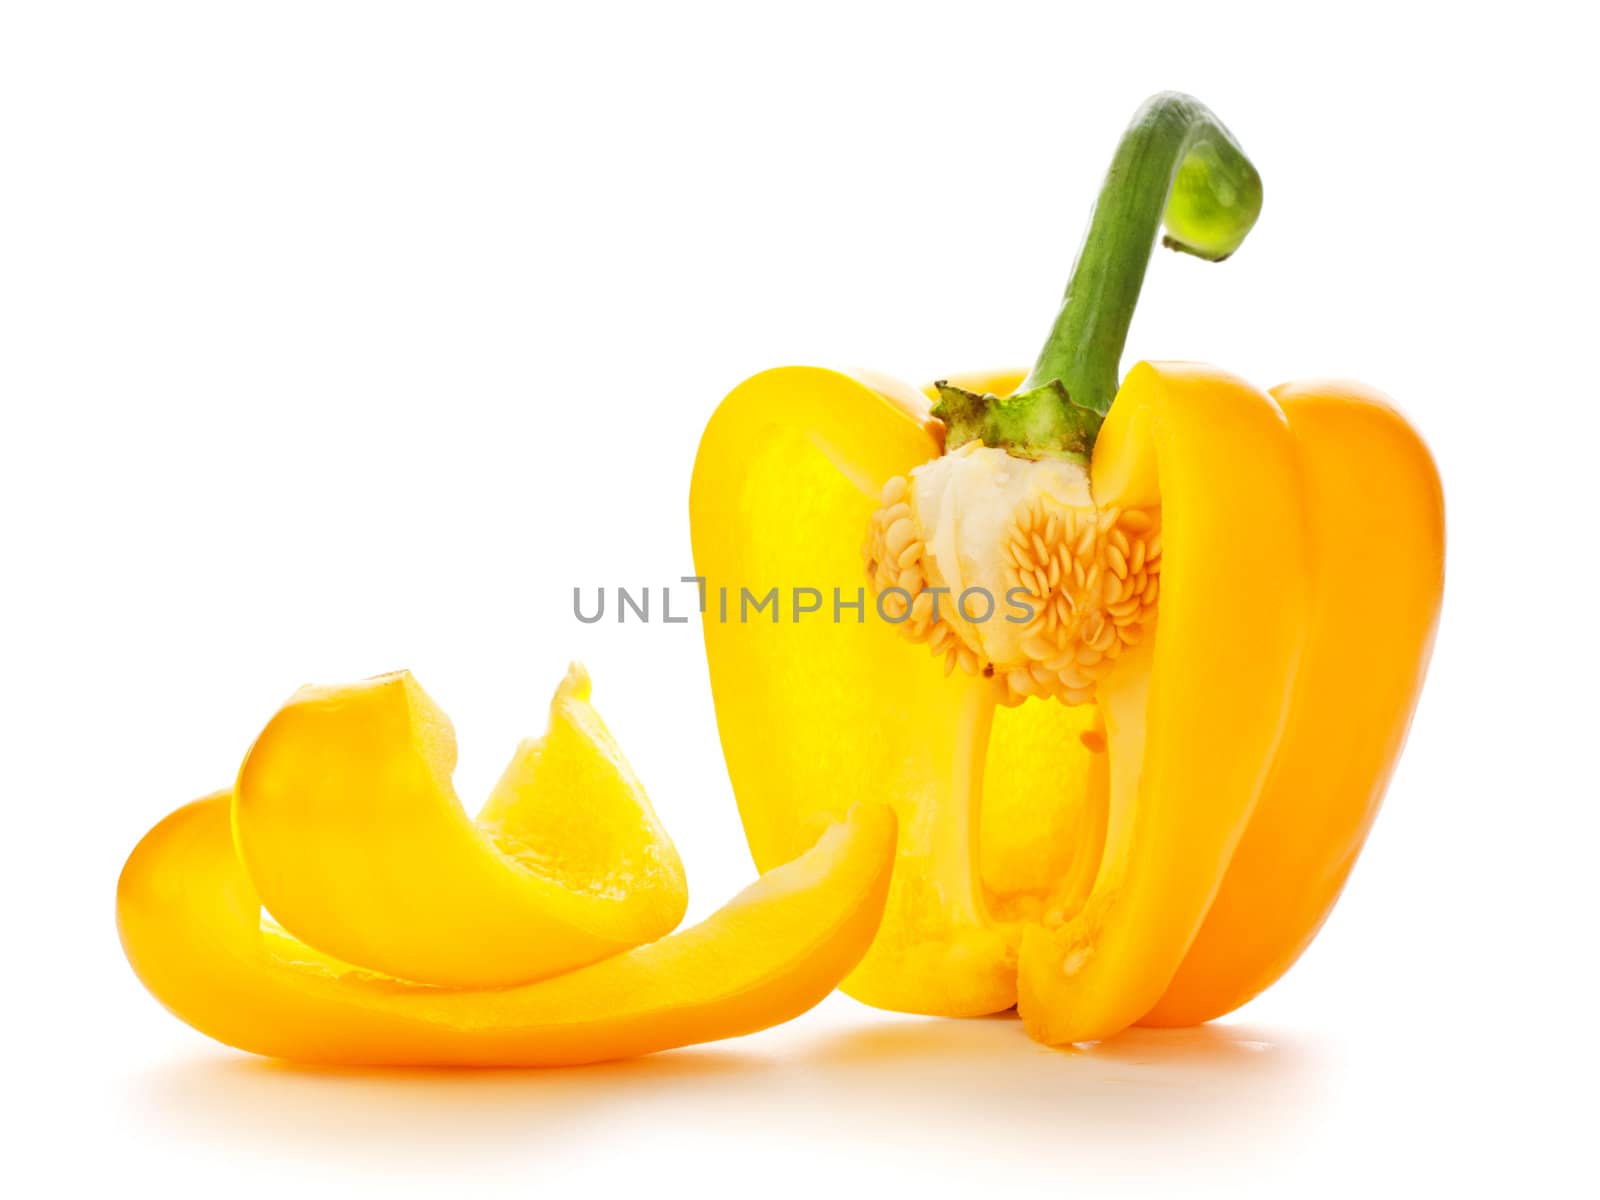 fresh yellow paprika isolated on white background